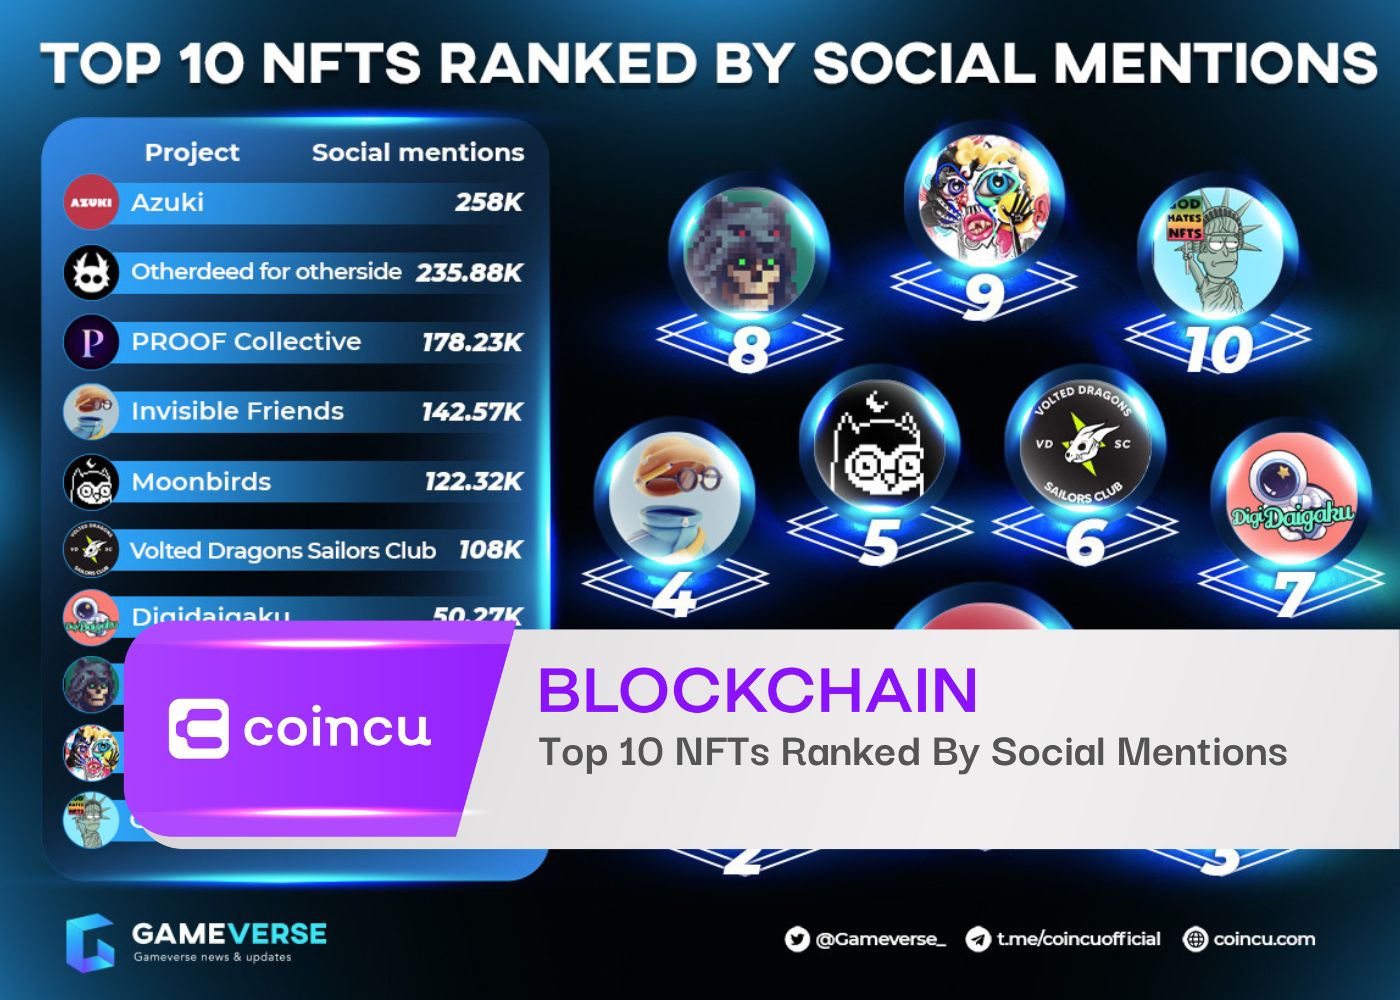 Las 10 NFT principales clasificadas por menciones sociales